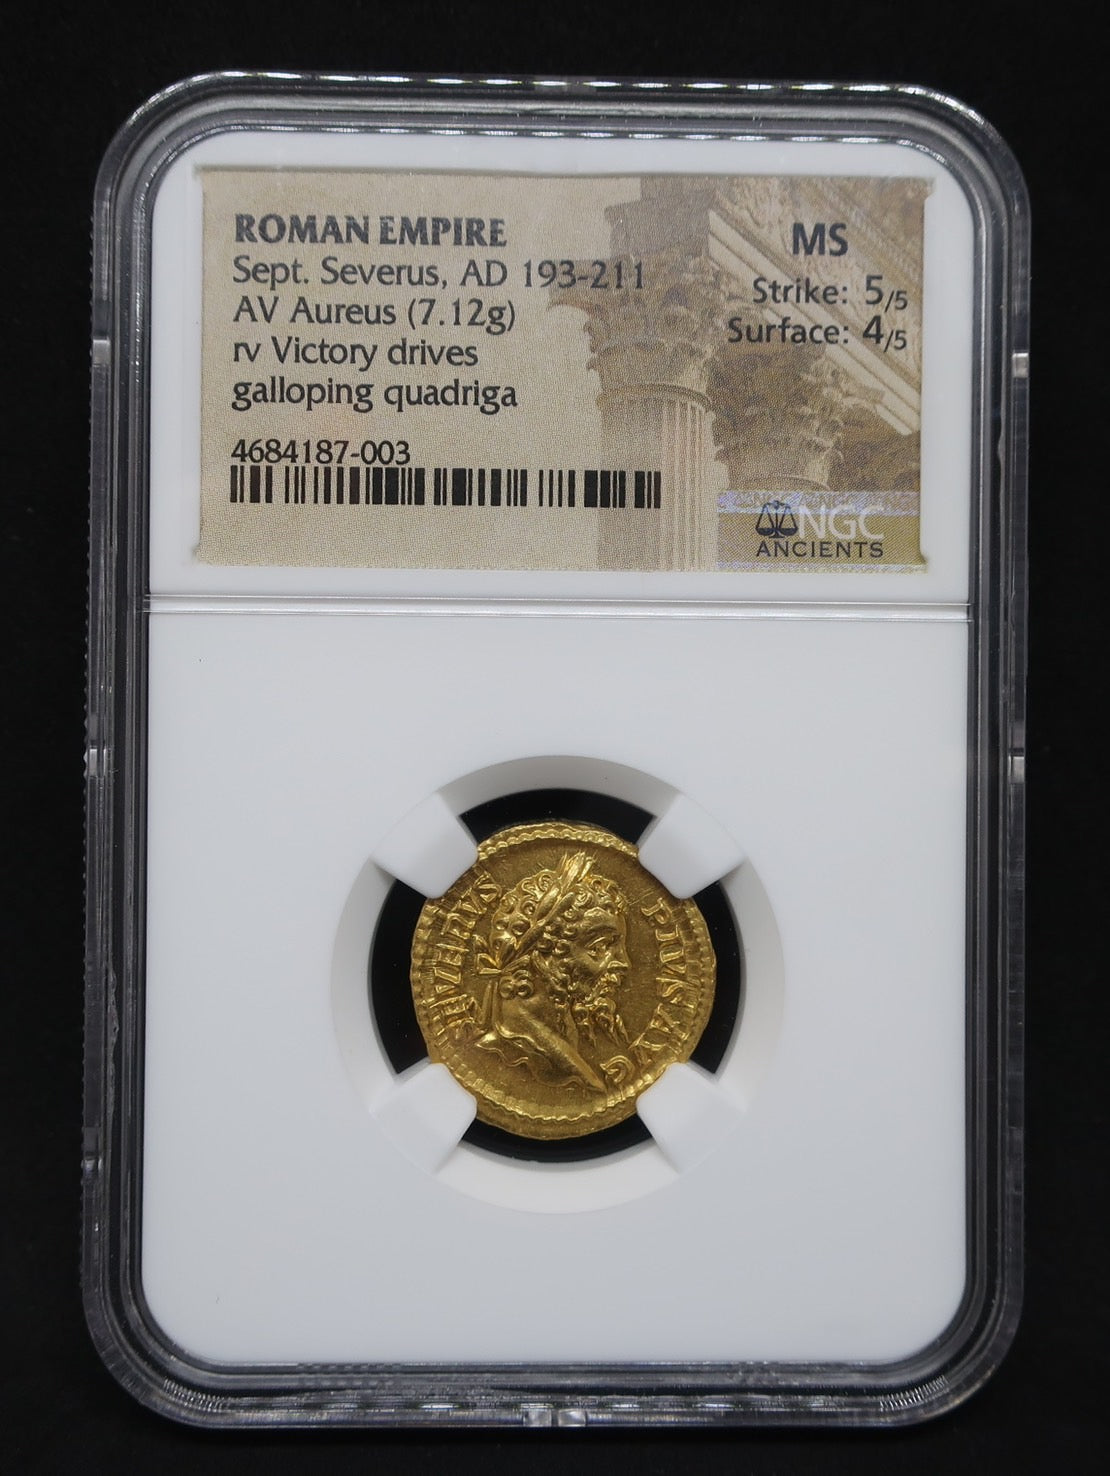 AD193-211 ローマ帝国 アウレウス金貨 セプティミウス セウェルス MS5 ...